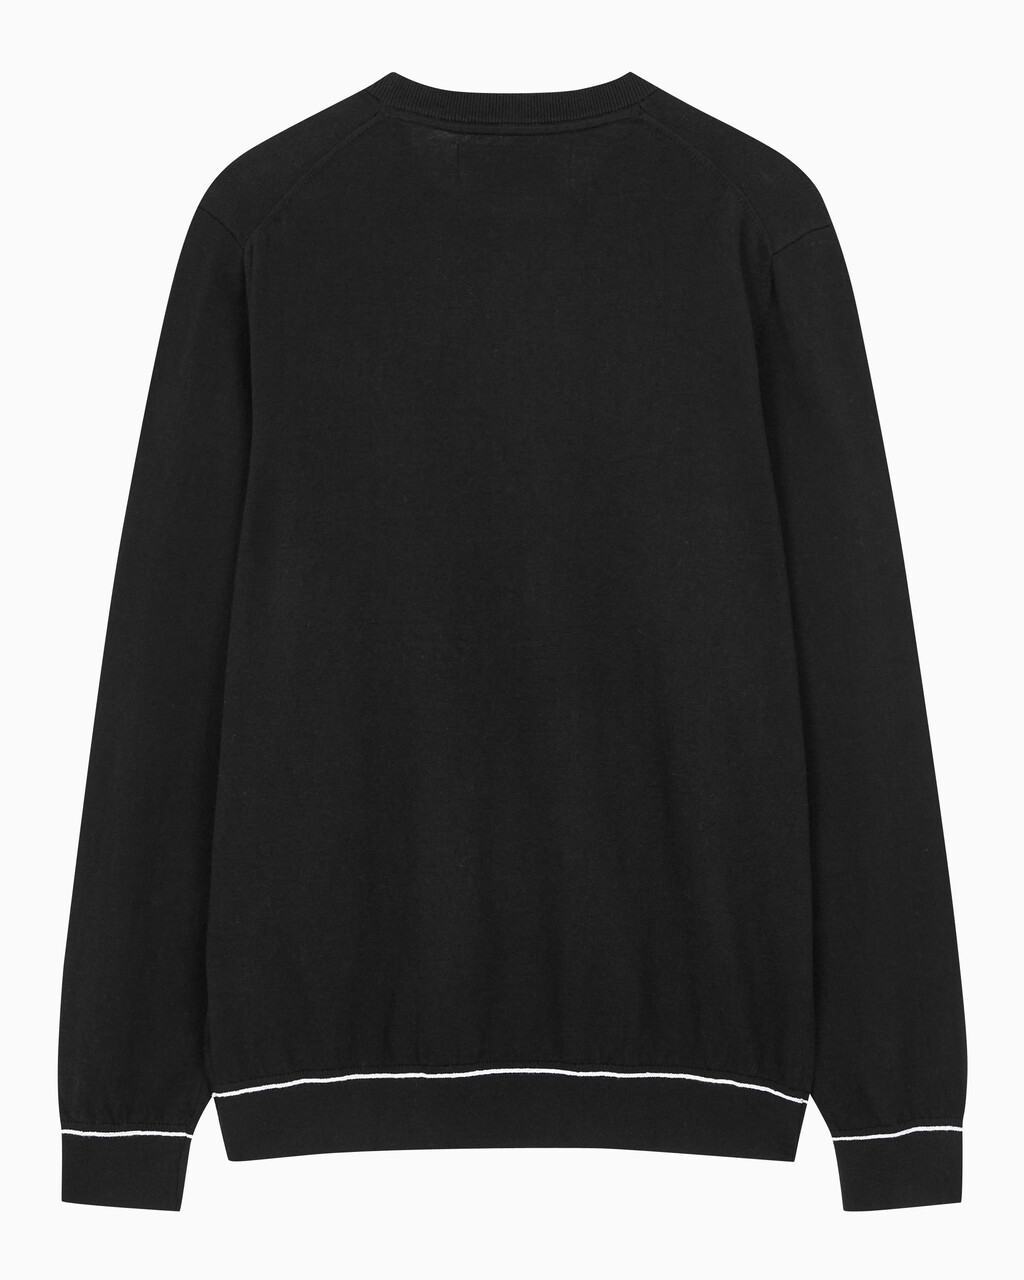 Buy 남성 에센셜 크루넥 스웨터 in color CK BLACK